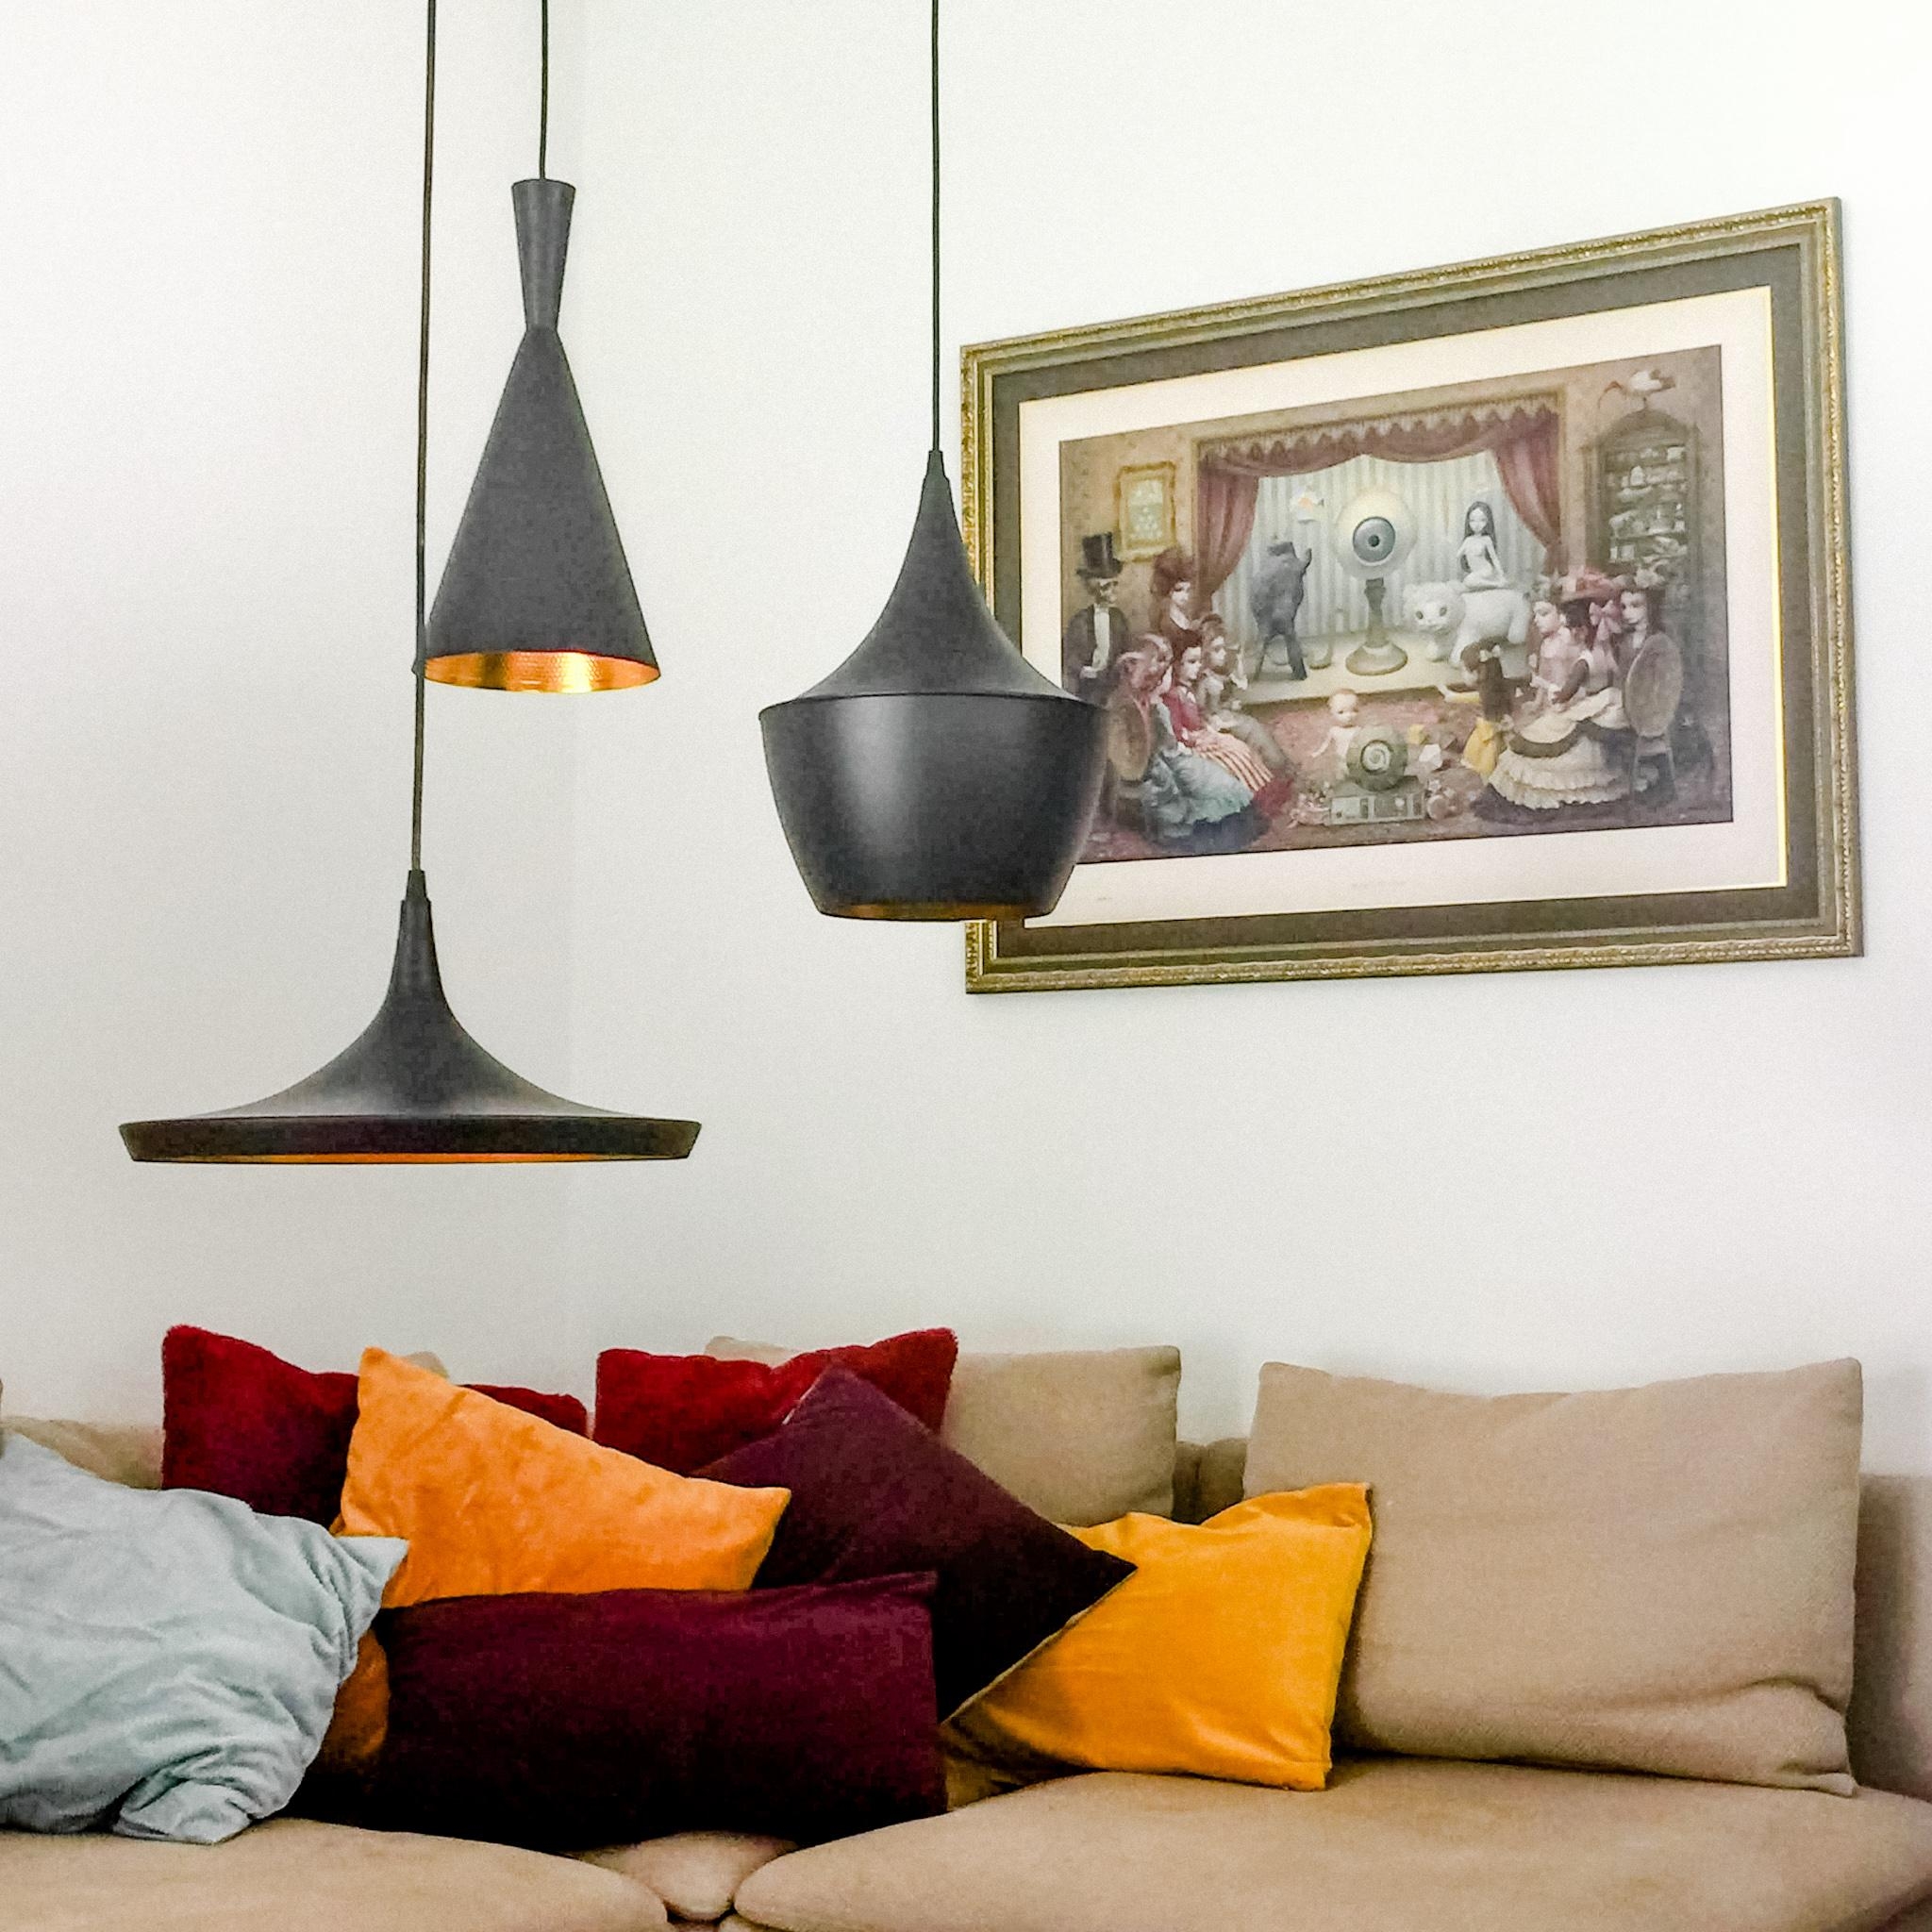 Willkommen - nehmt Platz und fühlt Euch wie daheim! #couch #lights #sitzecke #wohnzimmer #gemütlich #nehmtplatz 